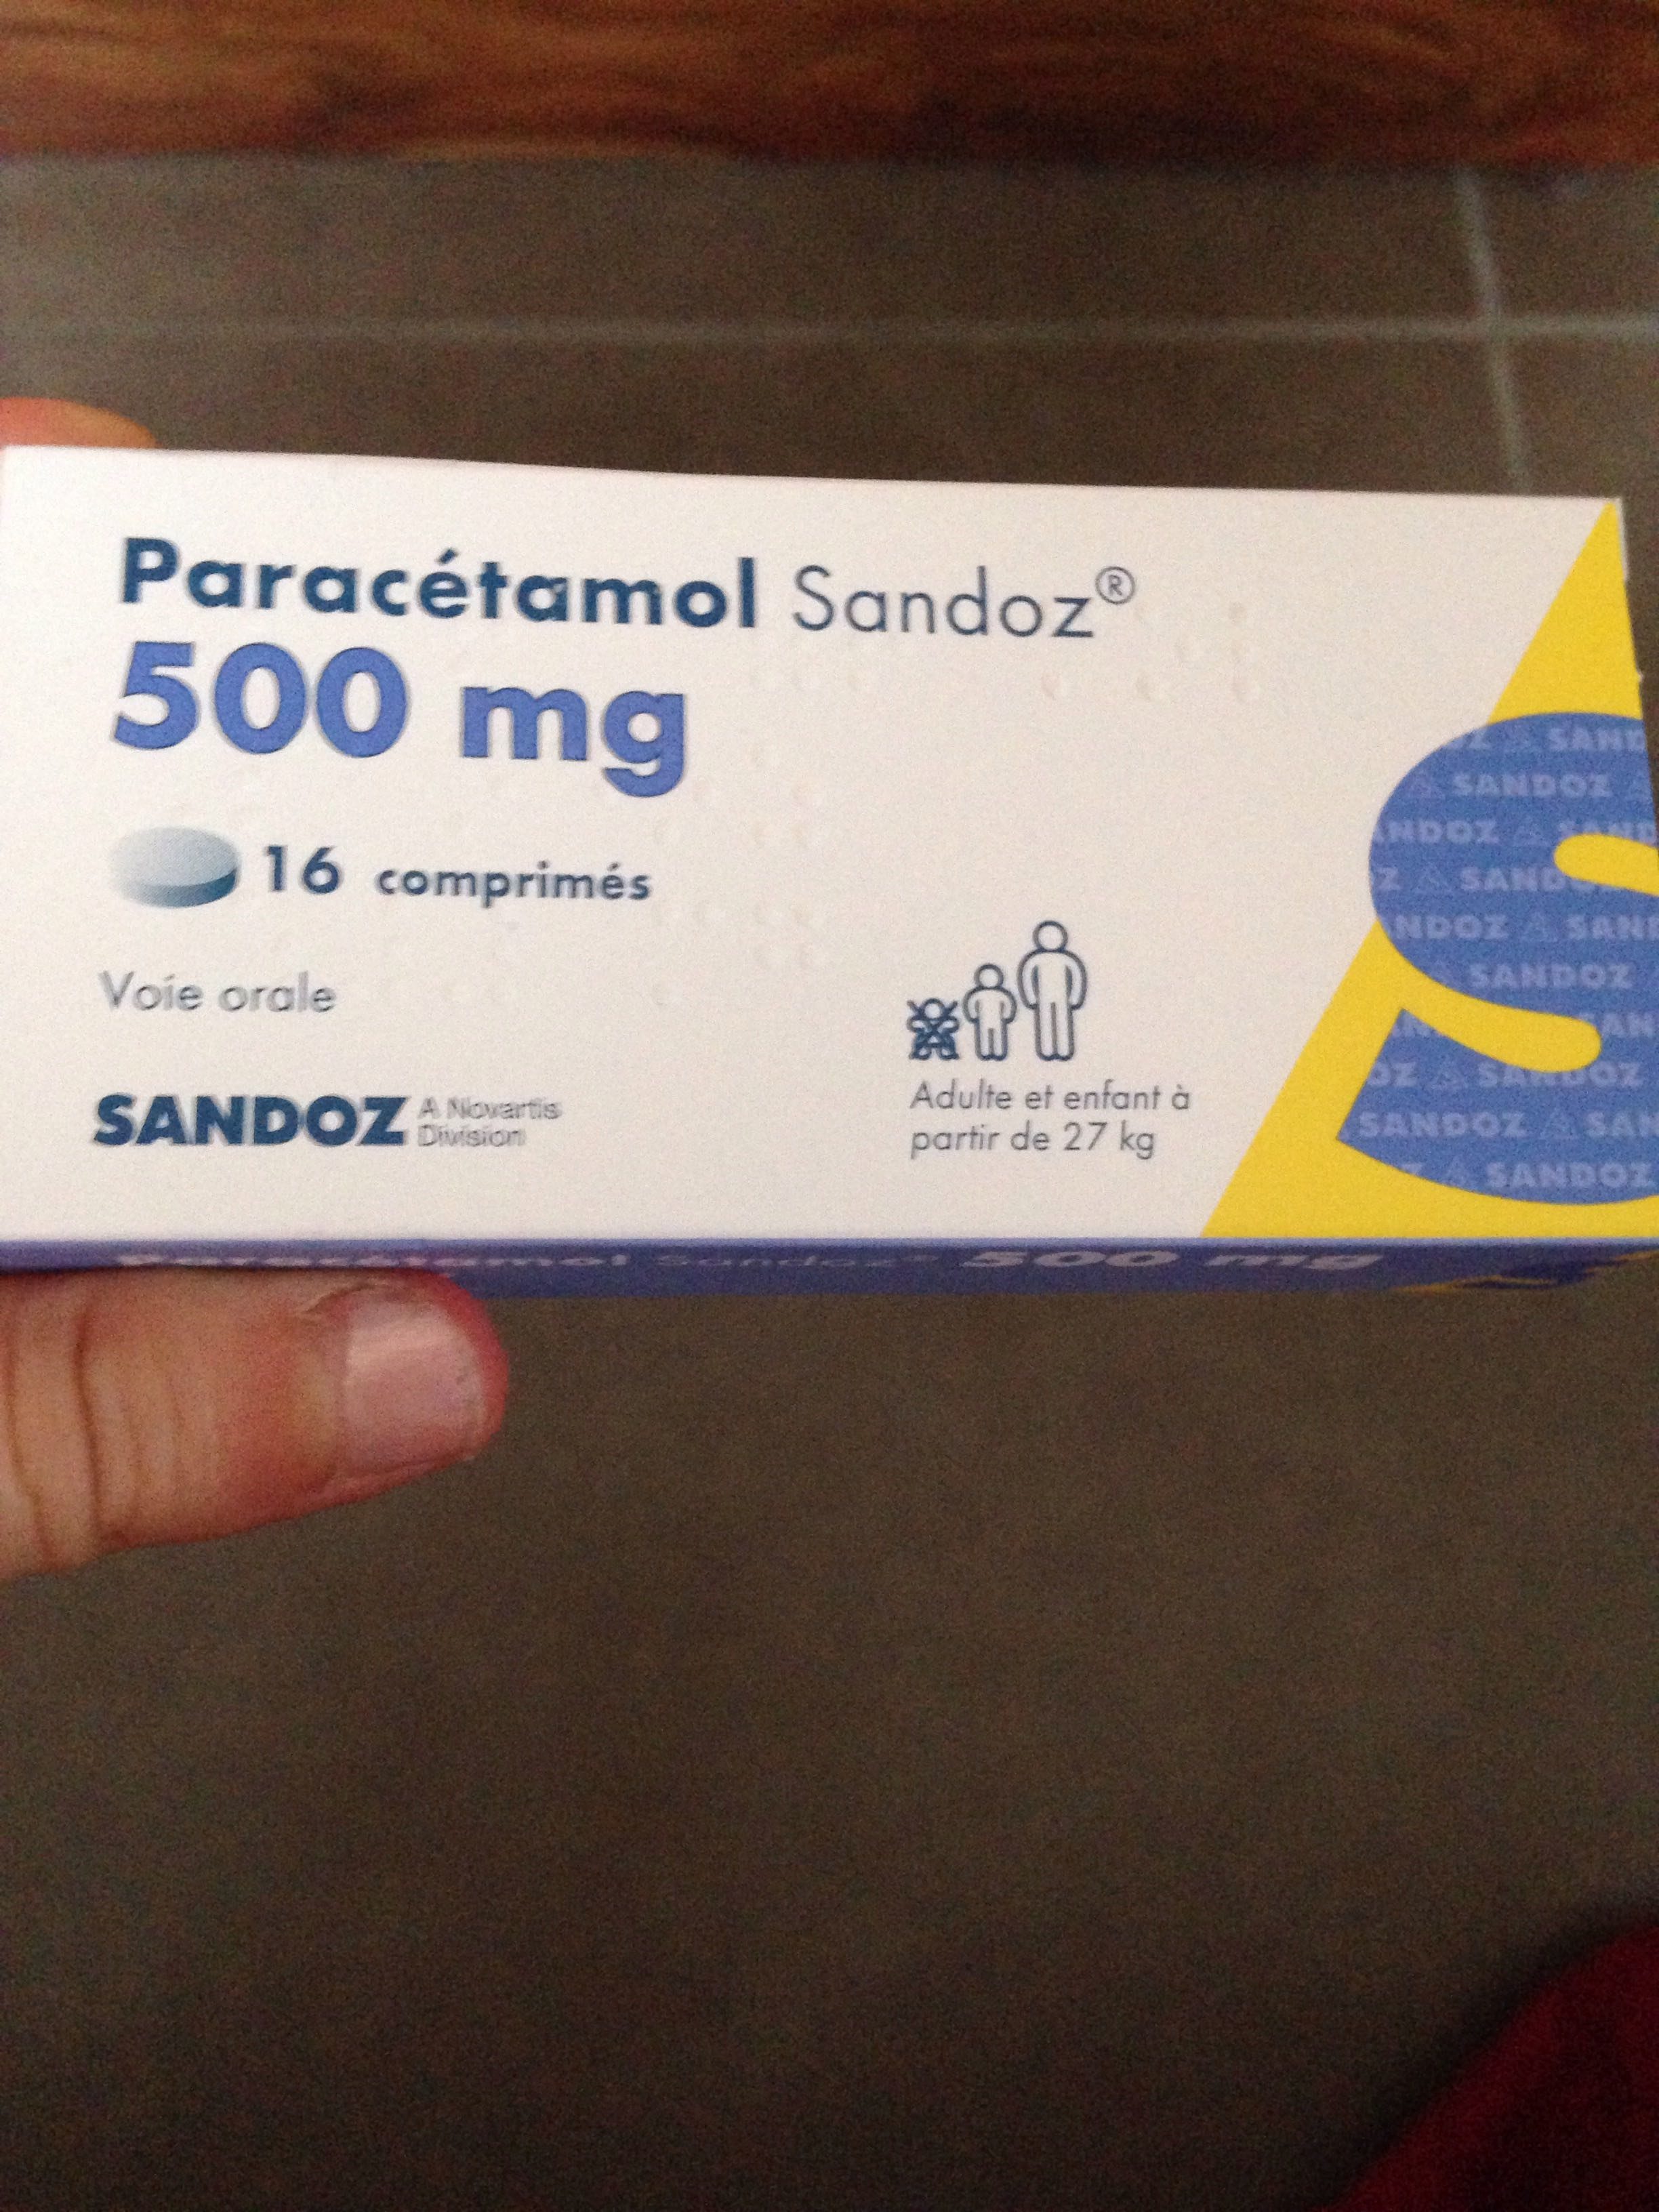 Paracetamol Sandoz Tabl 500 mg 20 pieces buy online